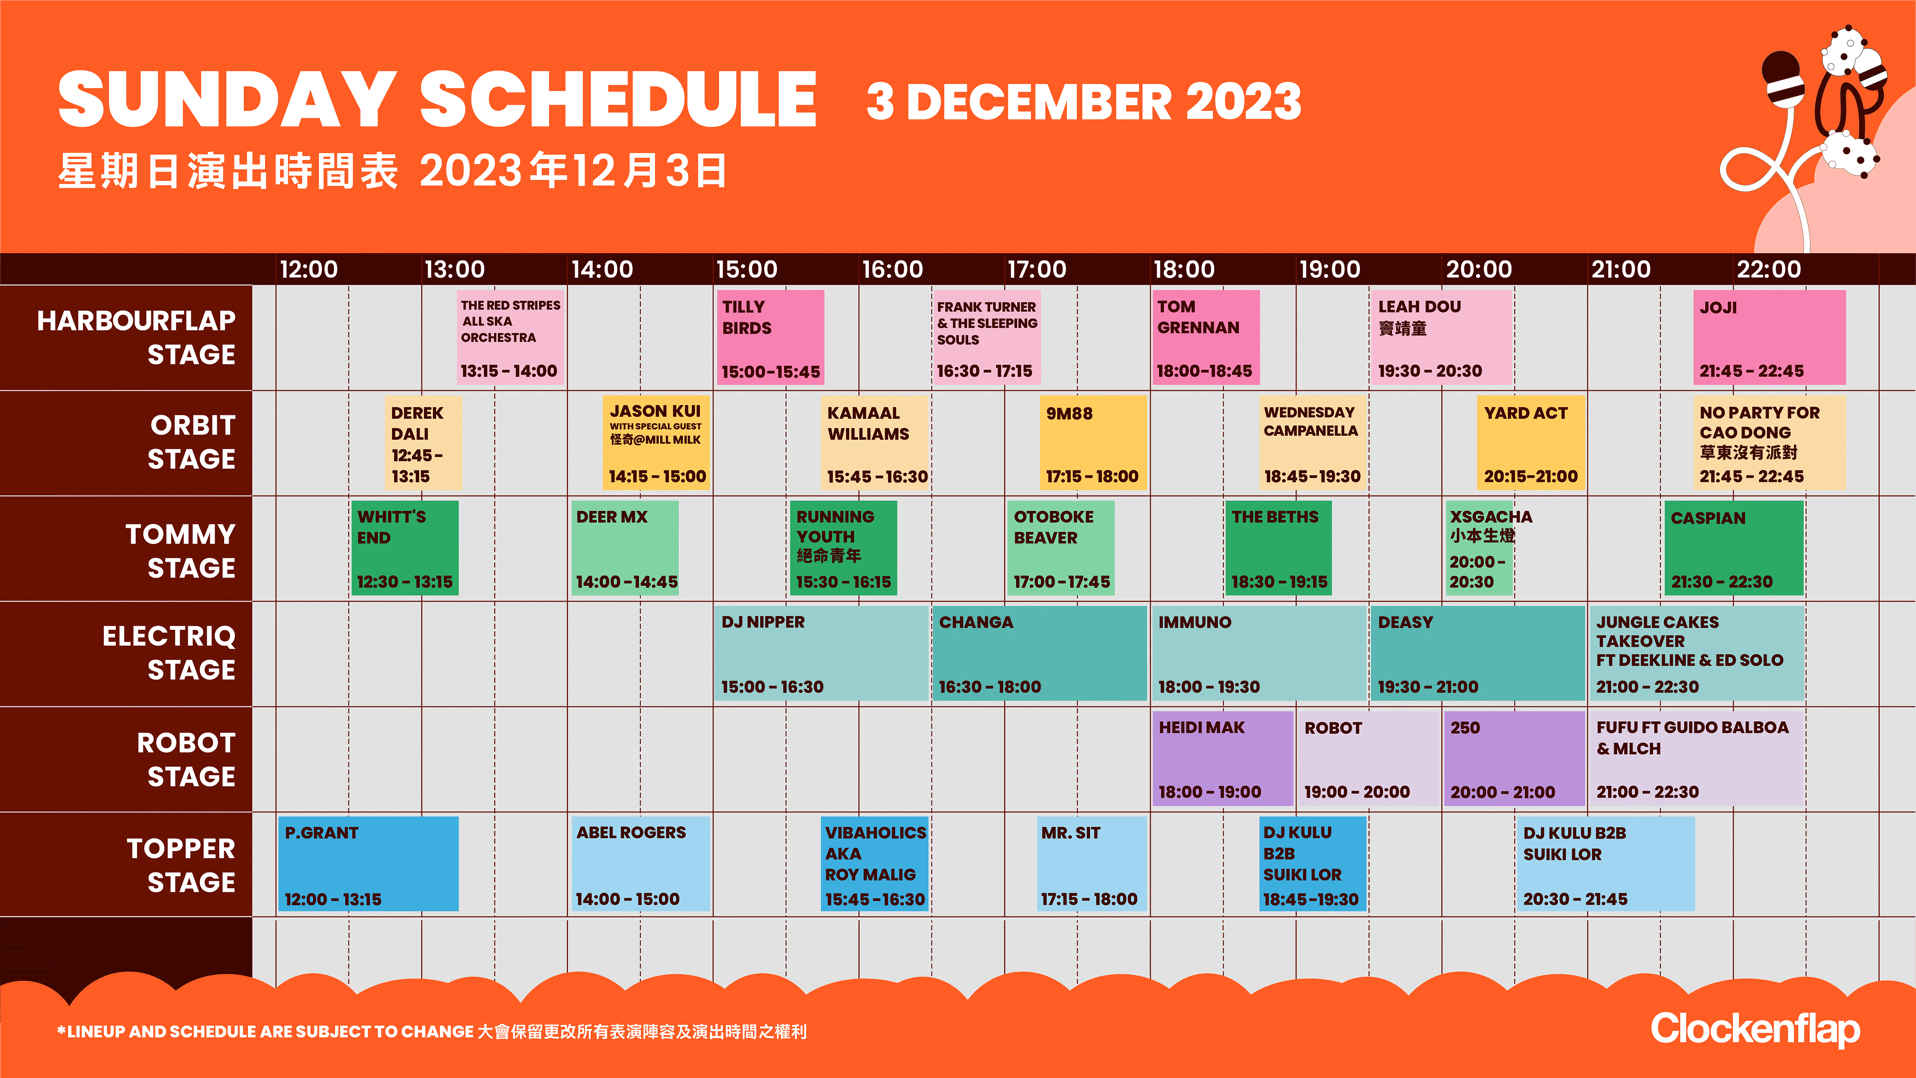 sunday schedule clockenflap december 2023